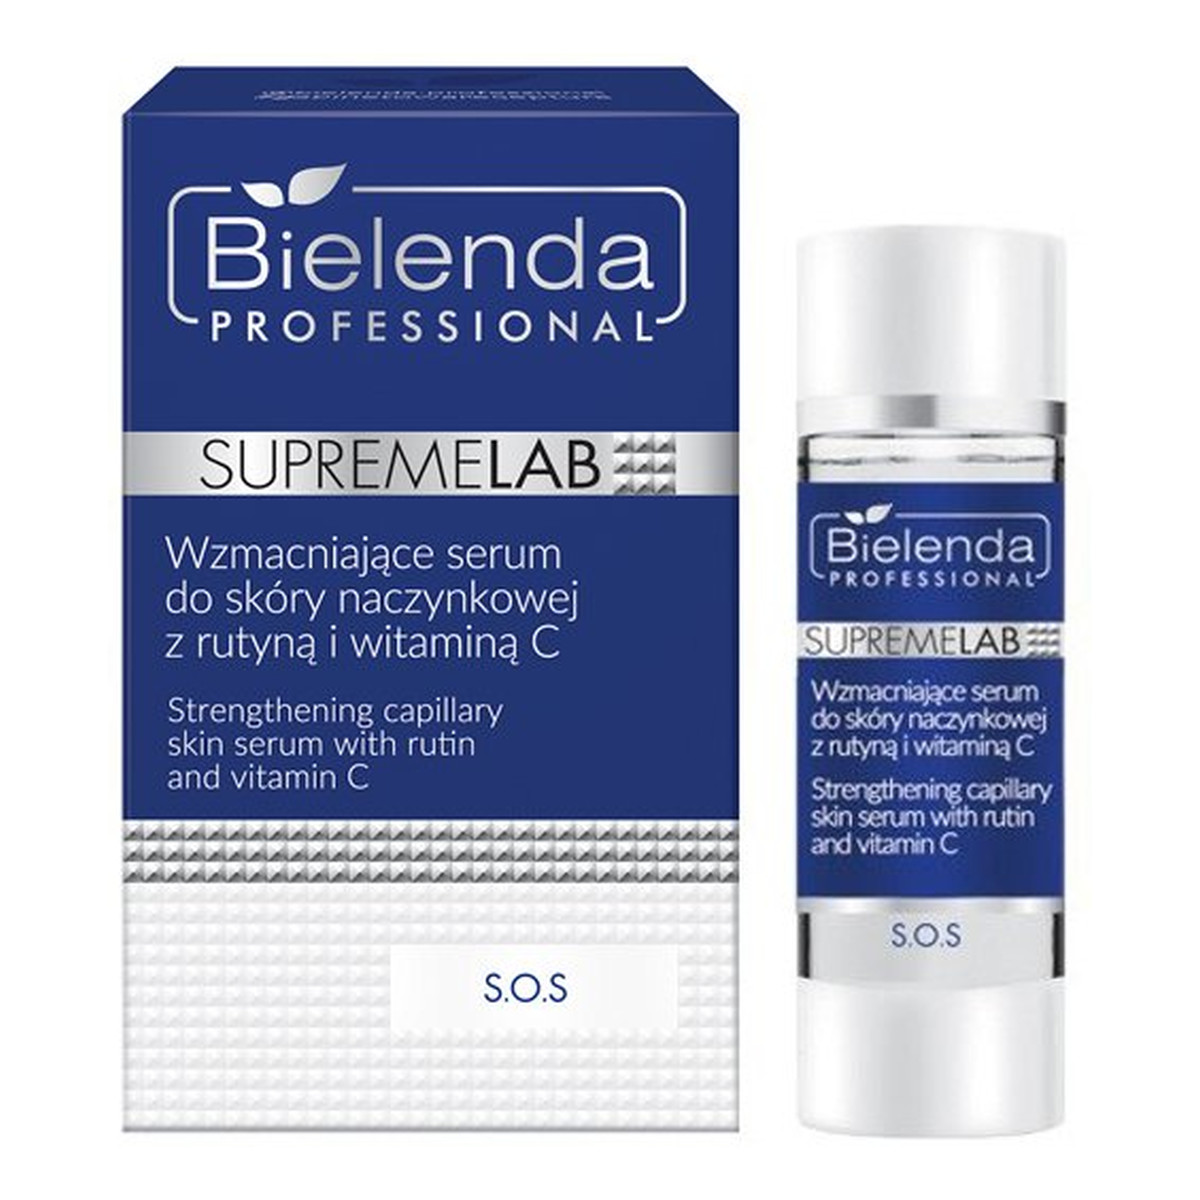 Bielenda Professional SUPREMELAB S.O.S wzmacniające serum do skóry naczynkowej z rutyną i witaminą C 15ml